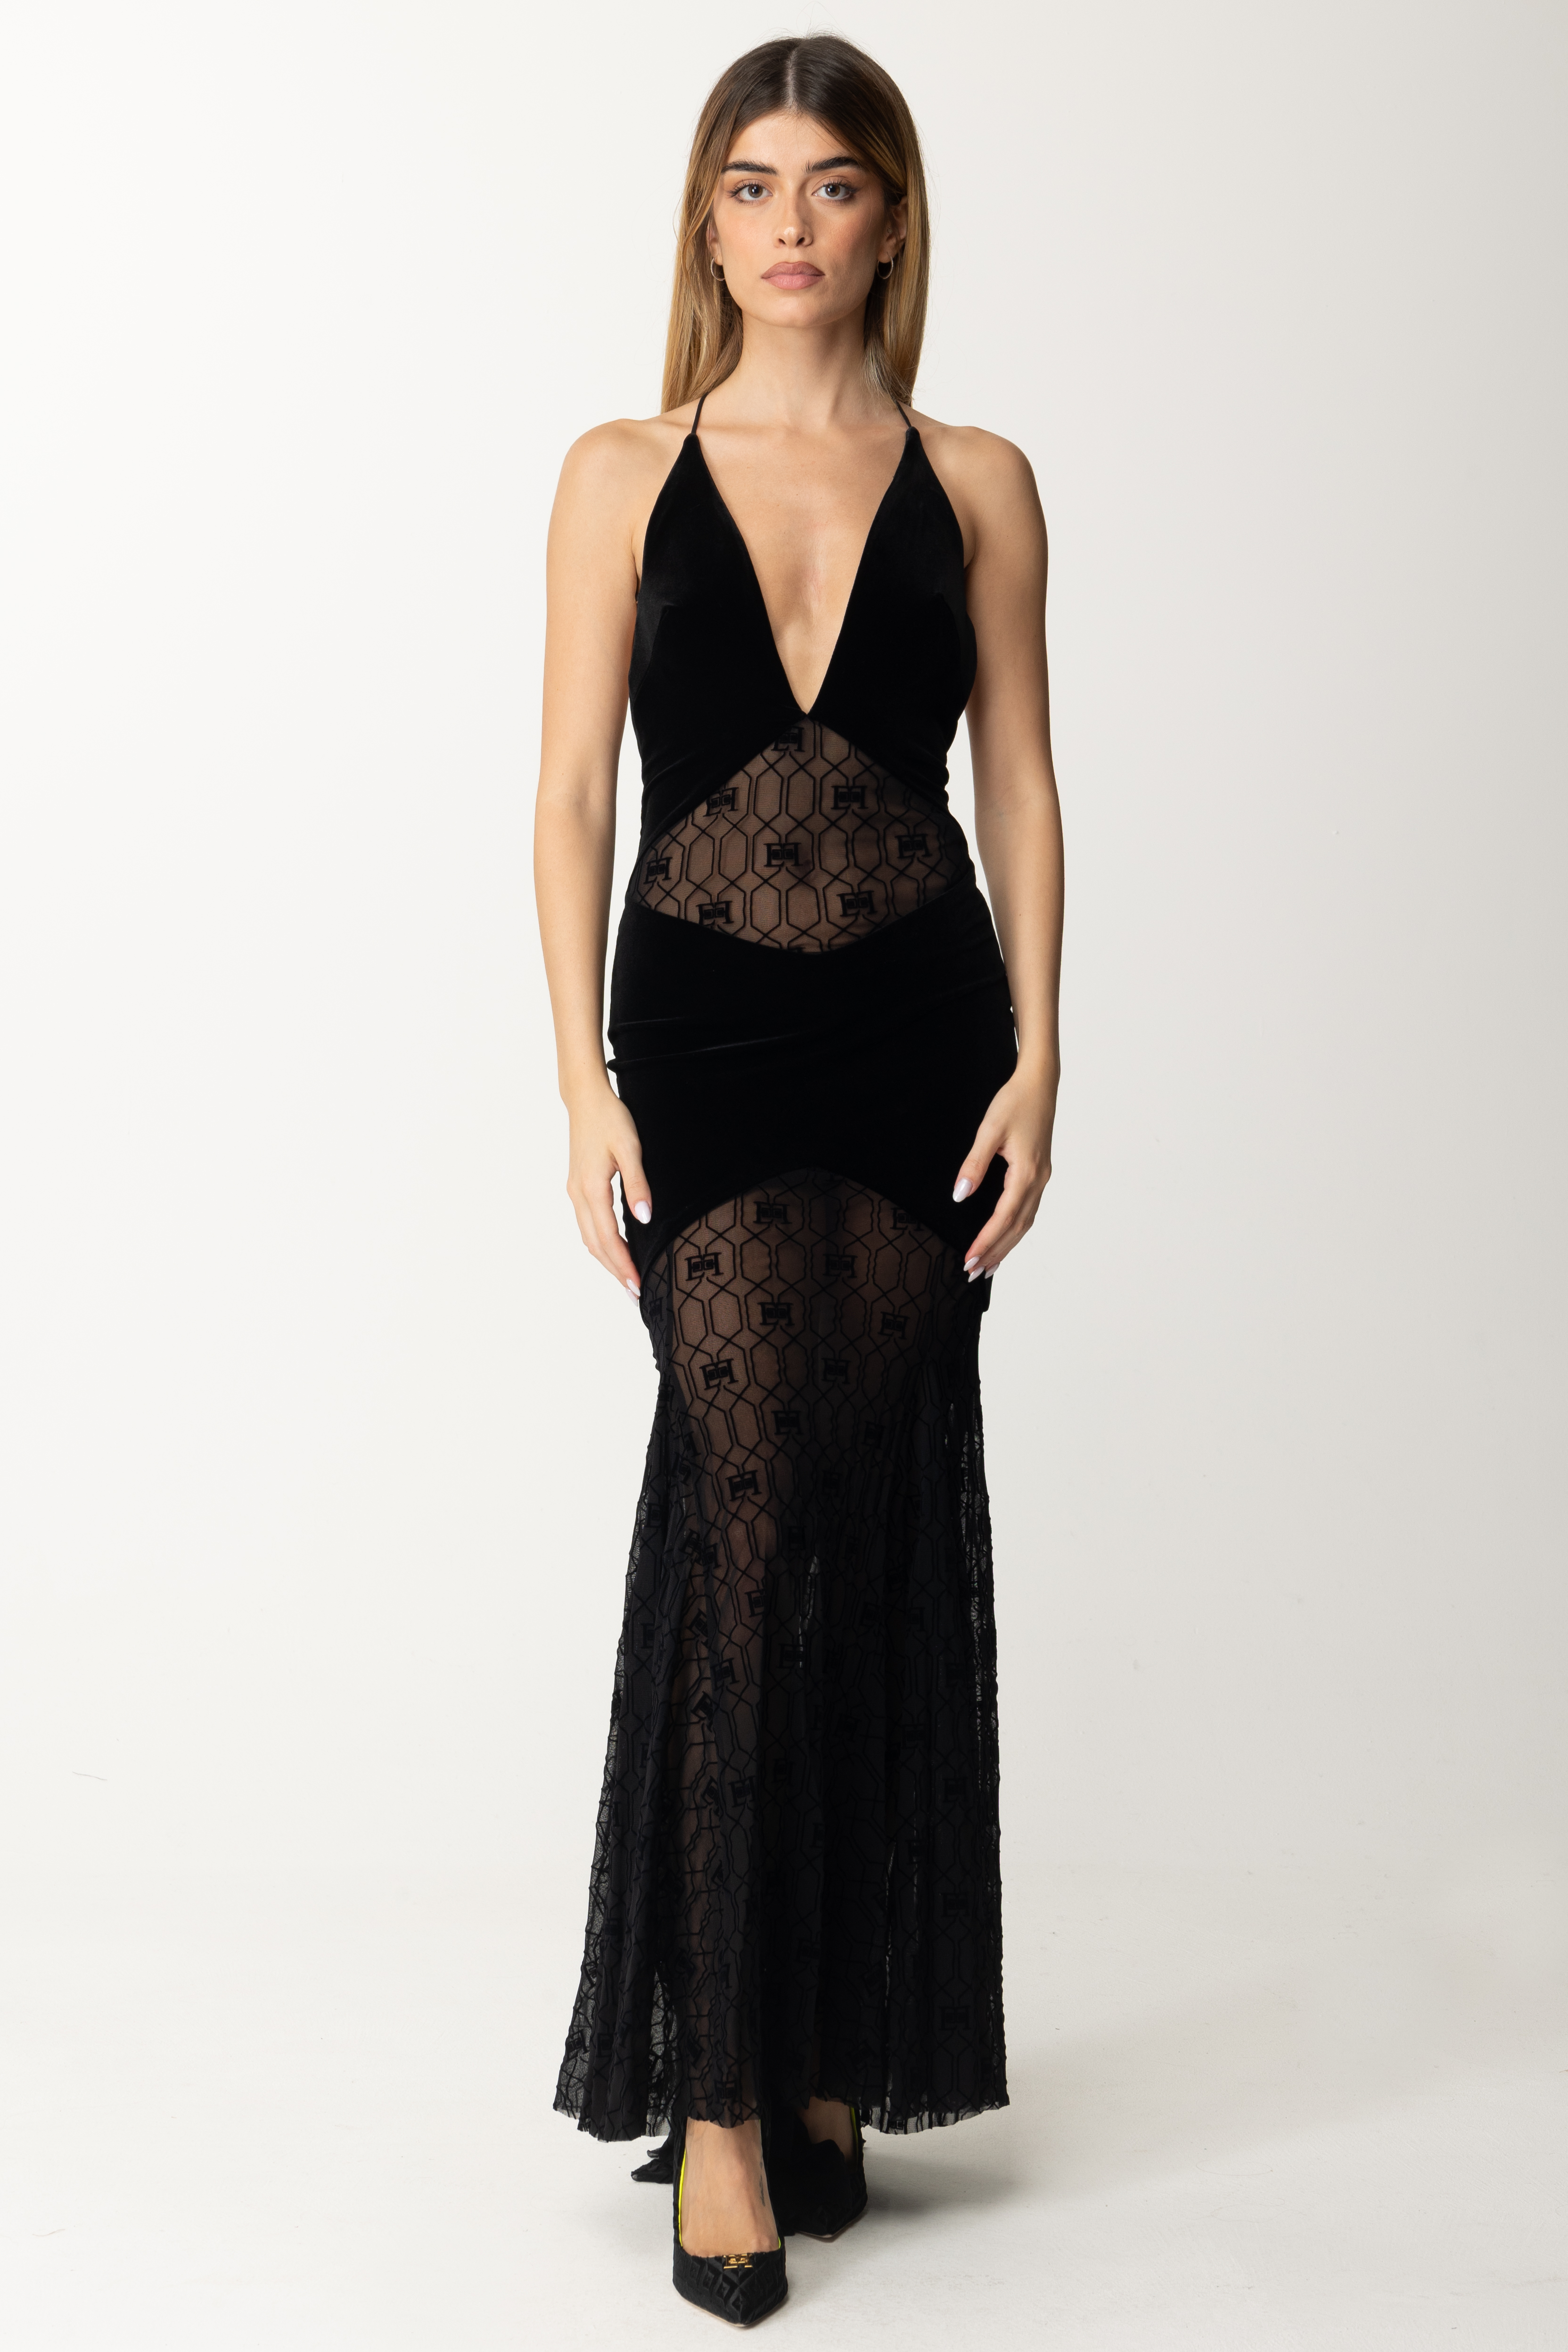 Preview: Elisabetta Franchi Red Carpet lingerie velvet dress Nero